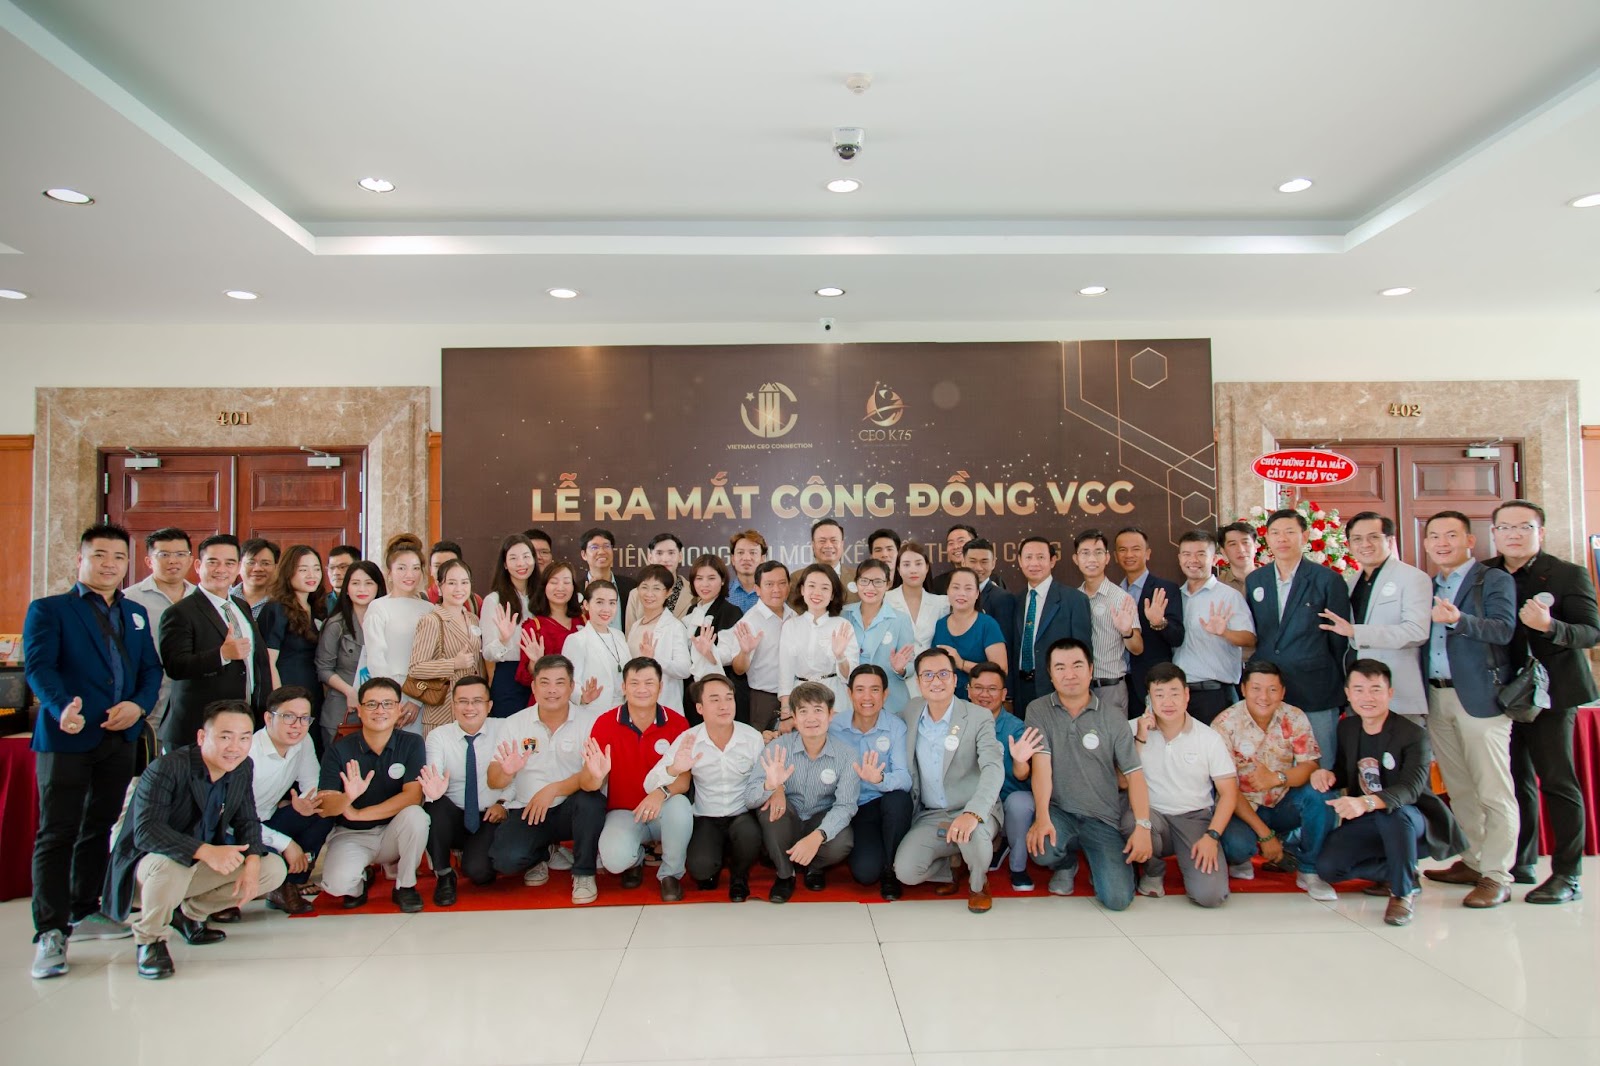 Lễ ra mắt cộng đồng VCC - Chương trình kết nối các CEO Việt Nam - 2